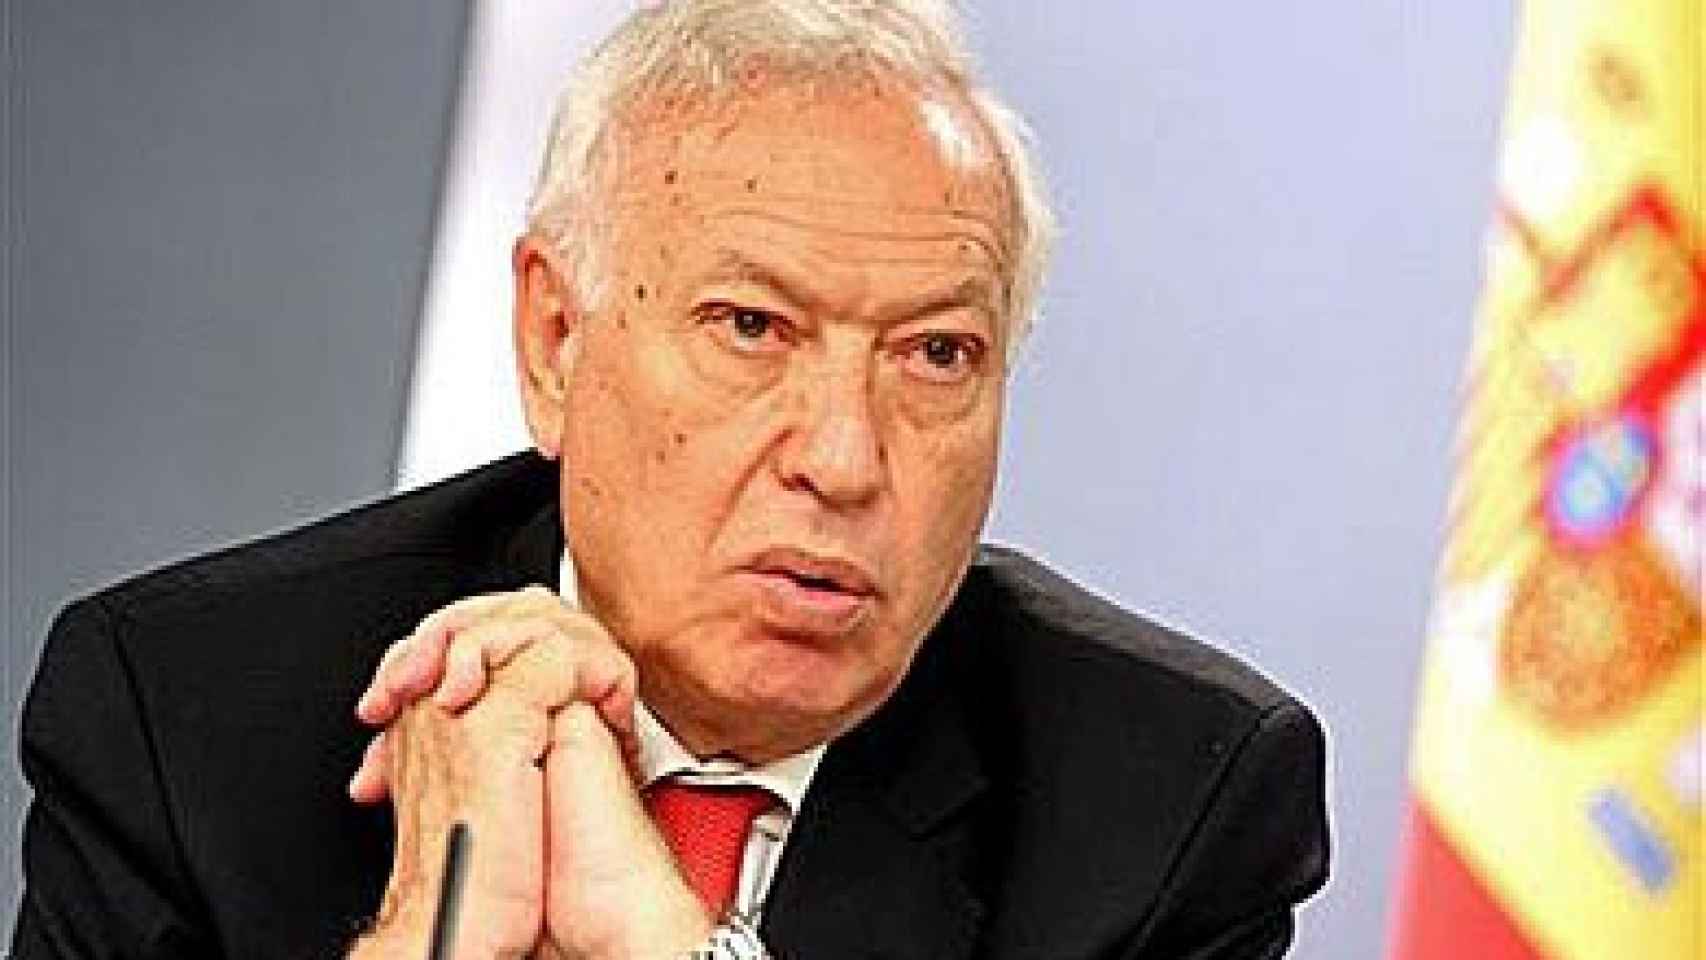 José Manuel García-Margallo, ministro de Asuntos Exteriores y de Cooperación